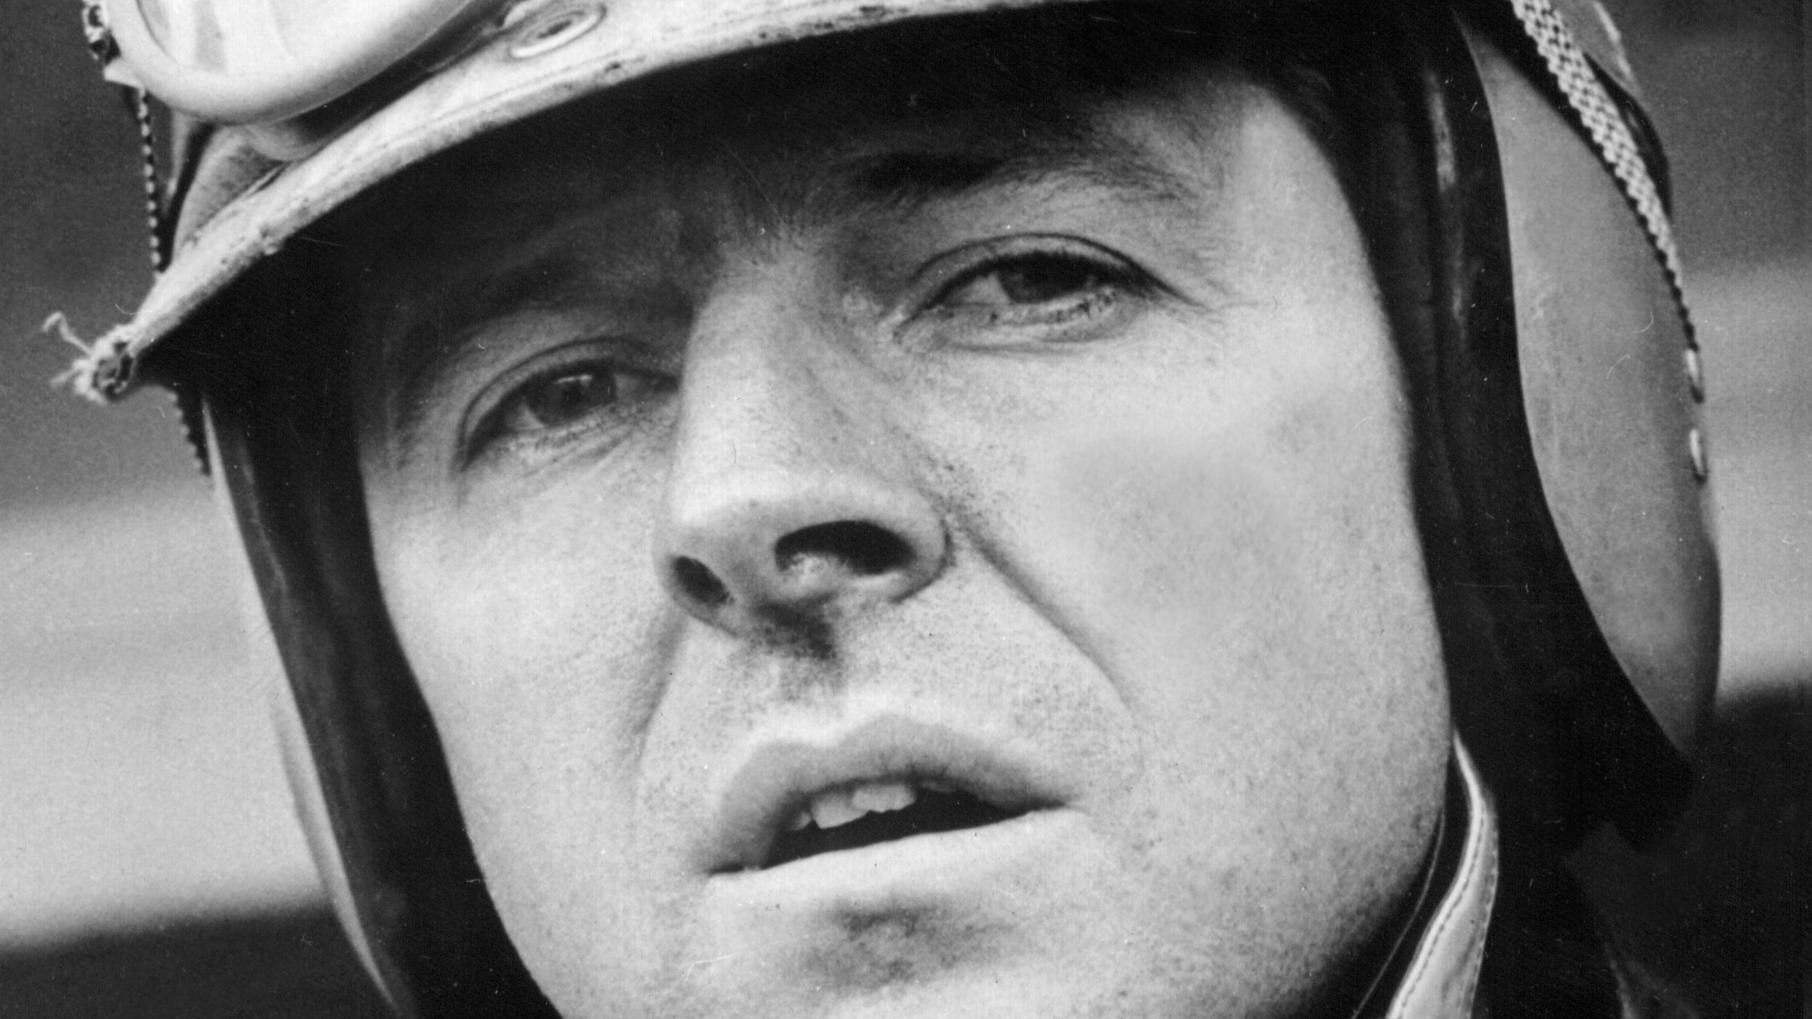 ARCHIV - Der deutsche Formel 1-Rennfahrer Wolfgang Graf Berghe von Trips, aufgenommen 1961. Beim Großen Preis von Italien am 10. September 1961 kollidierte sein Wagen kurz nach dem Start mit denen der Briten Jim Clark und Ashmore. Trips wird aus dem 